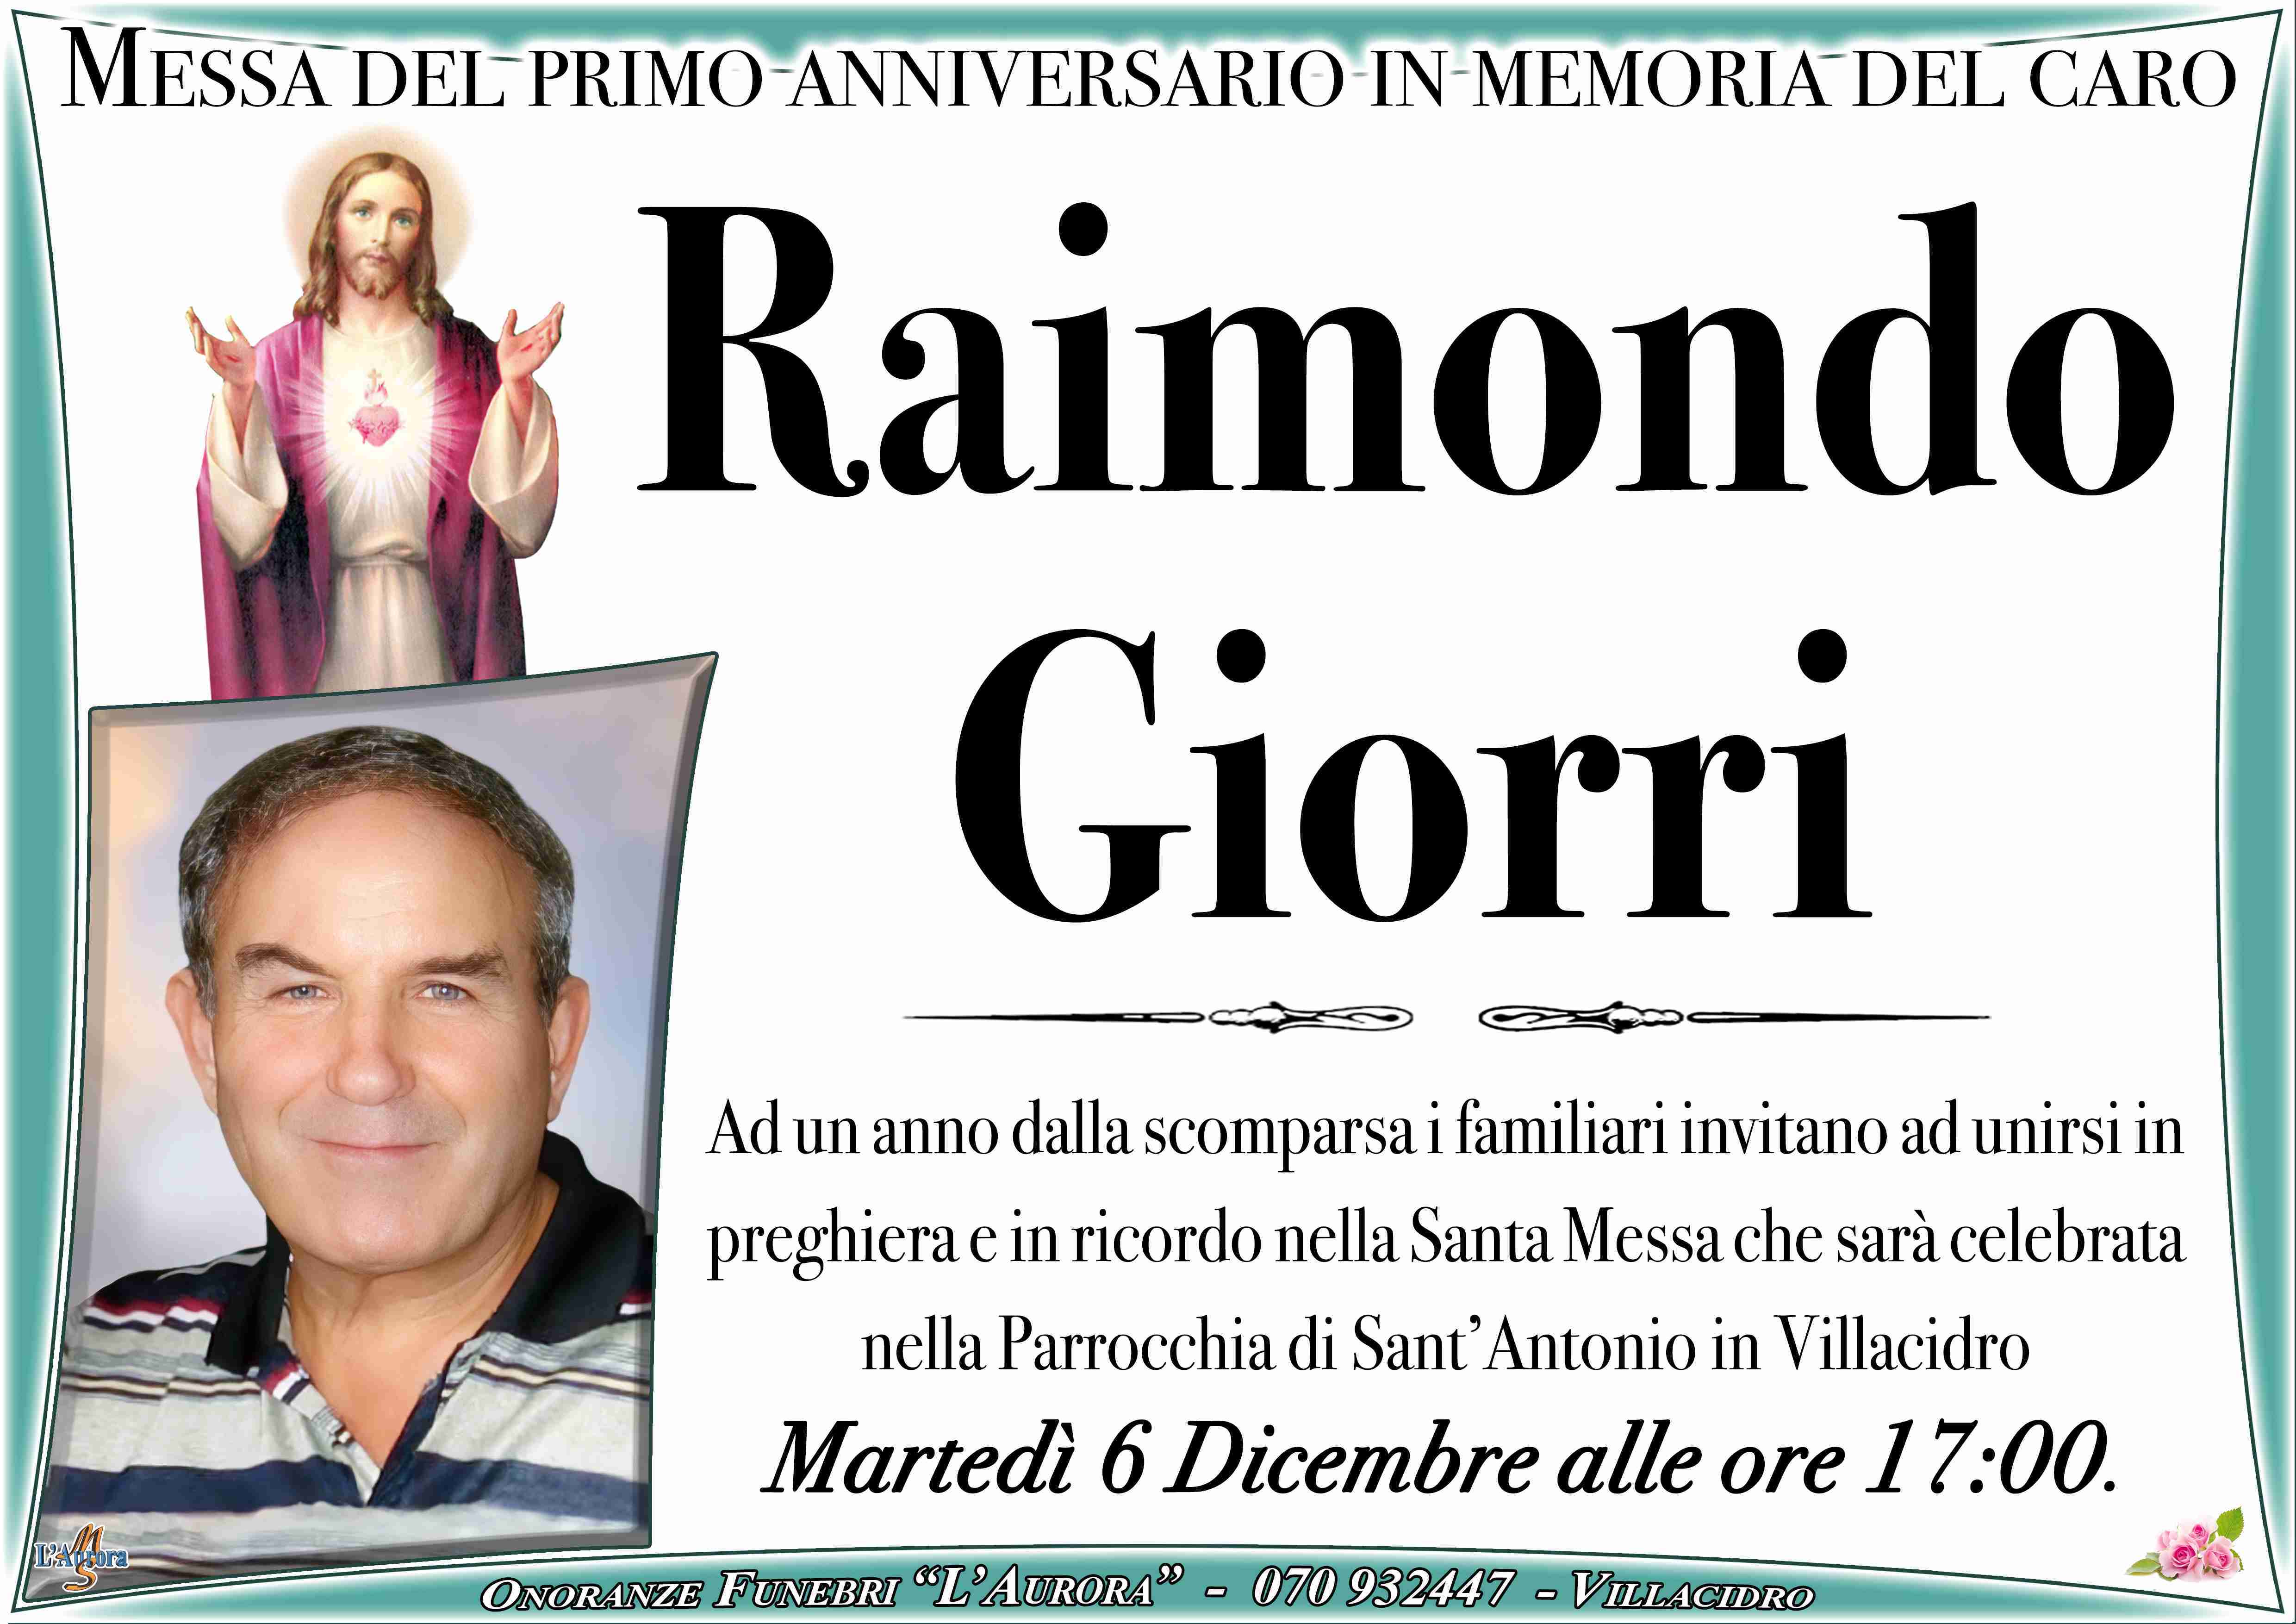 Raimondo Giorri